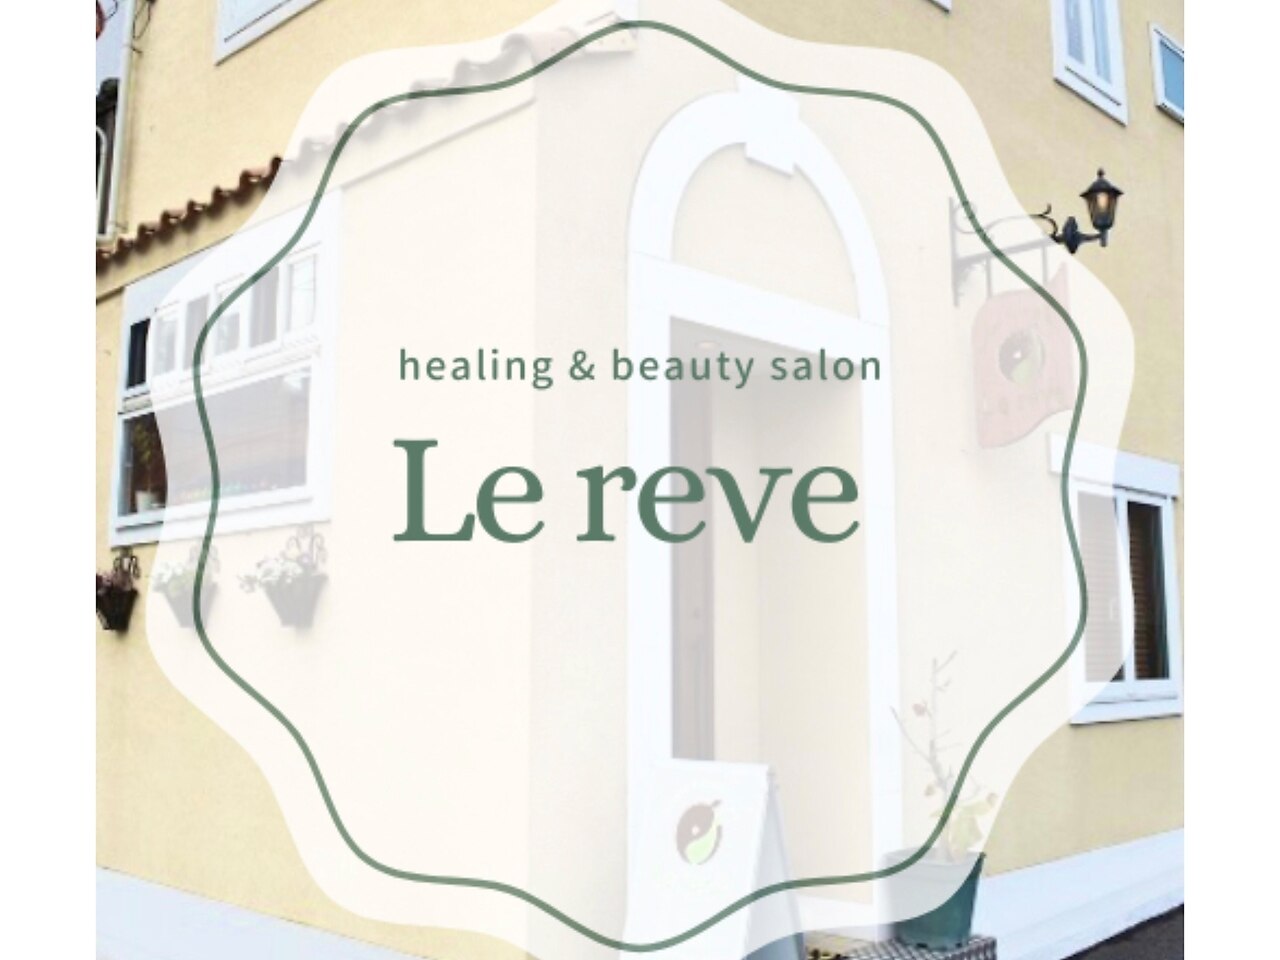 ルレーヴ(Le reve)の紹介画像